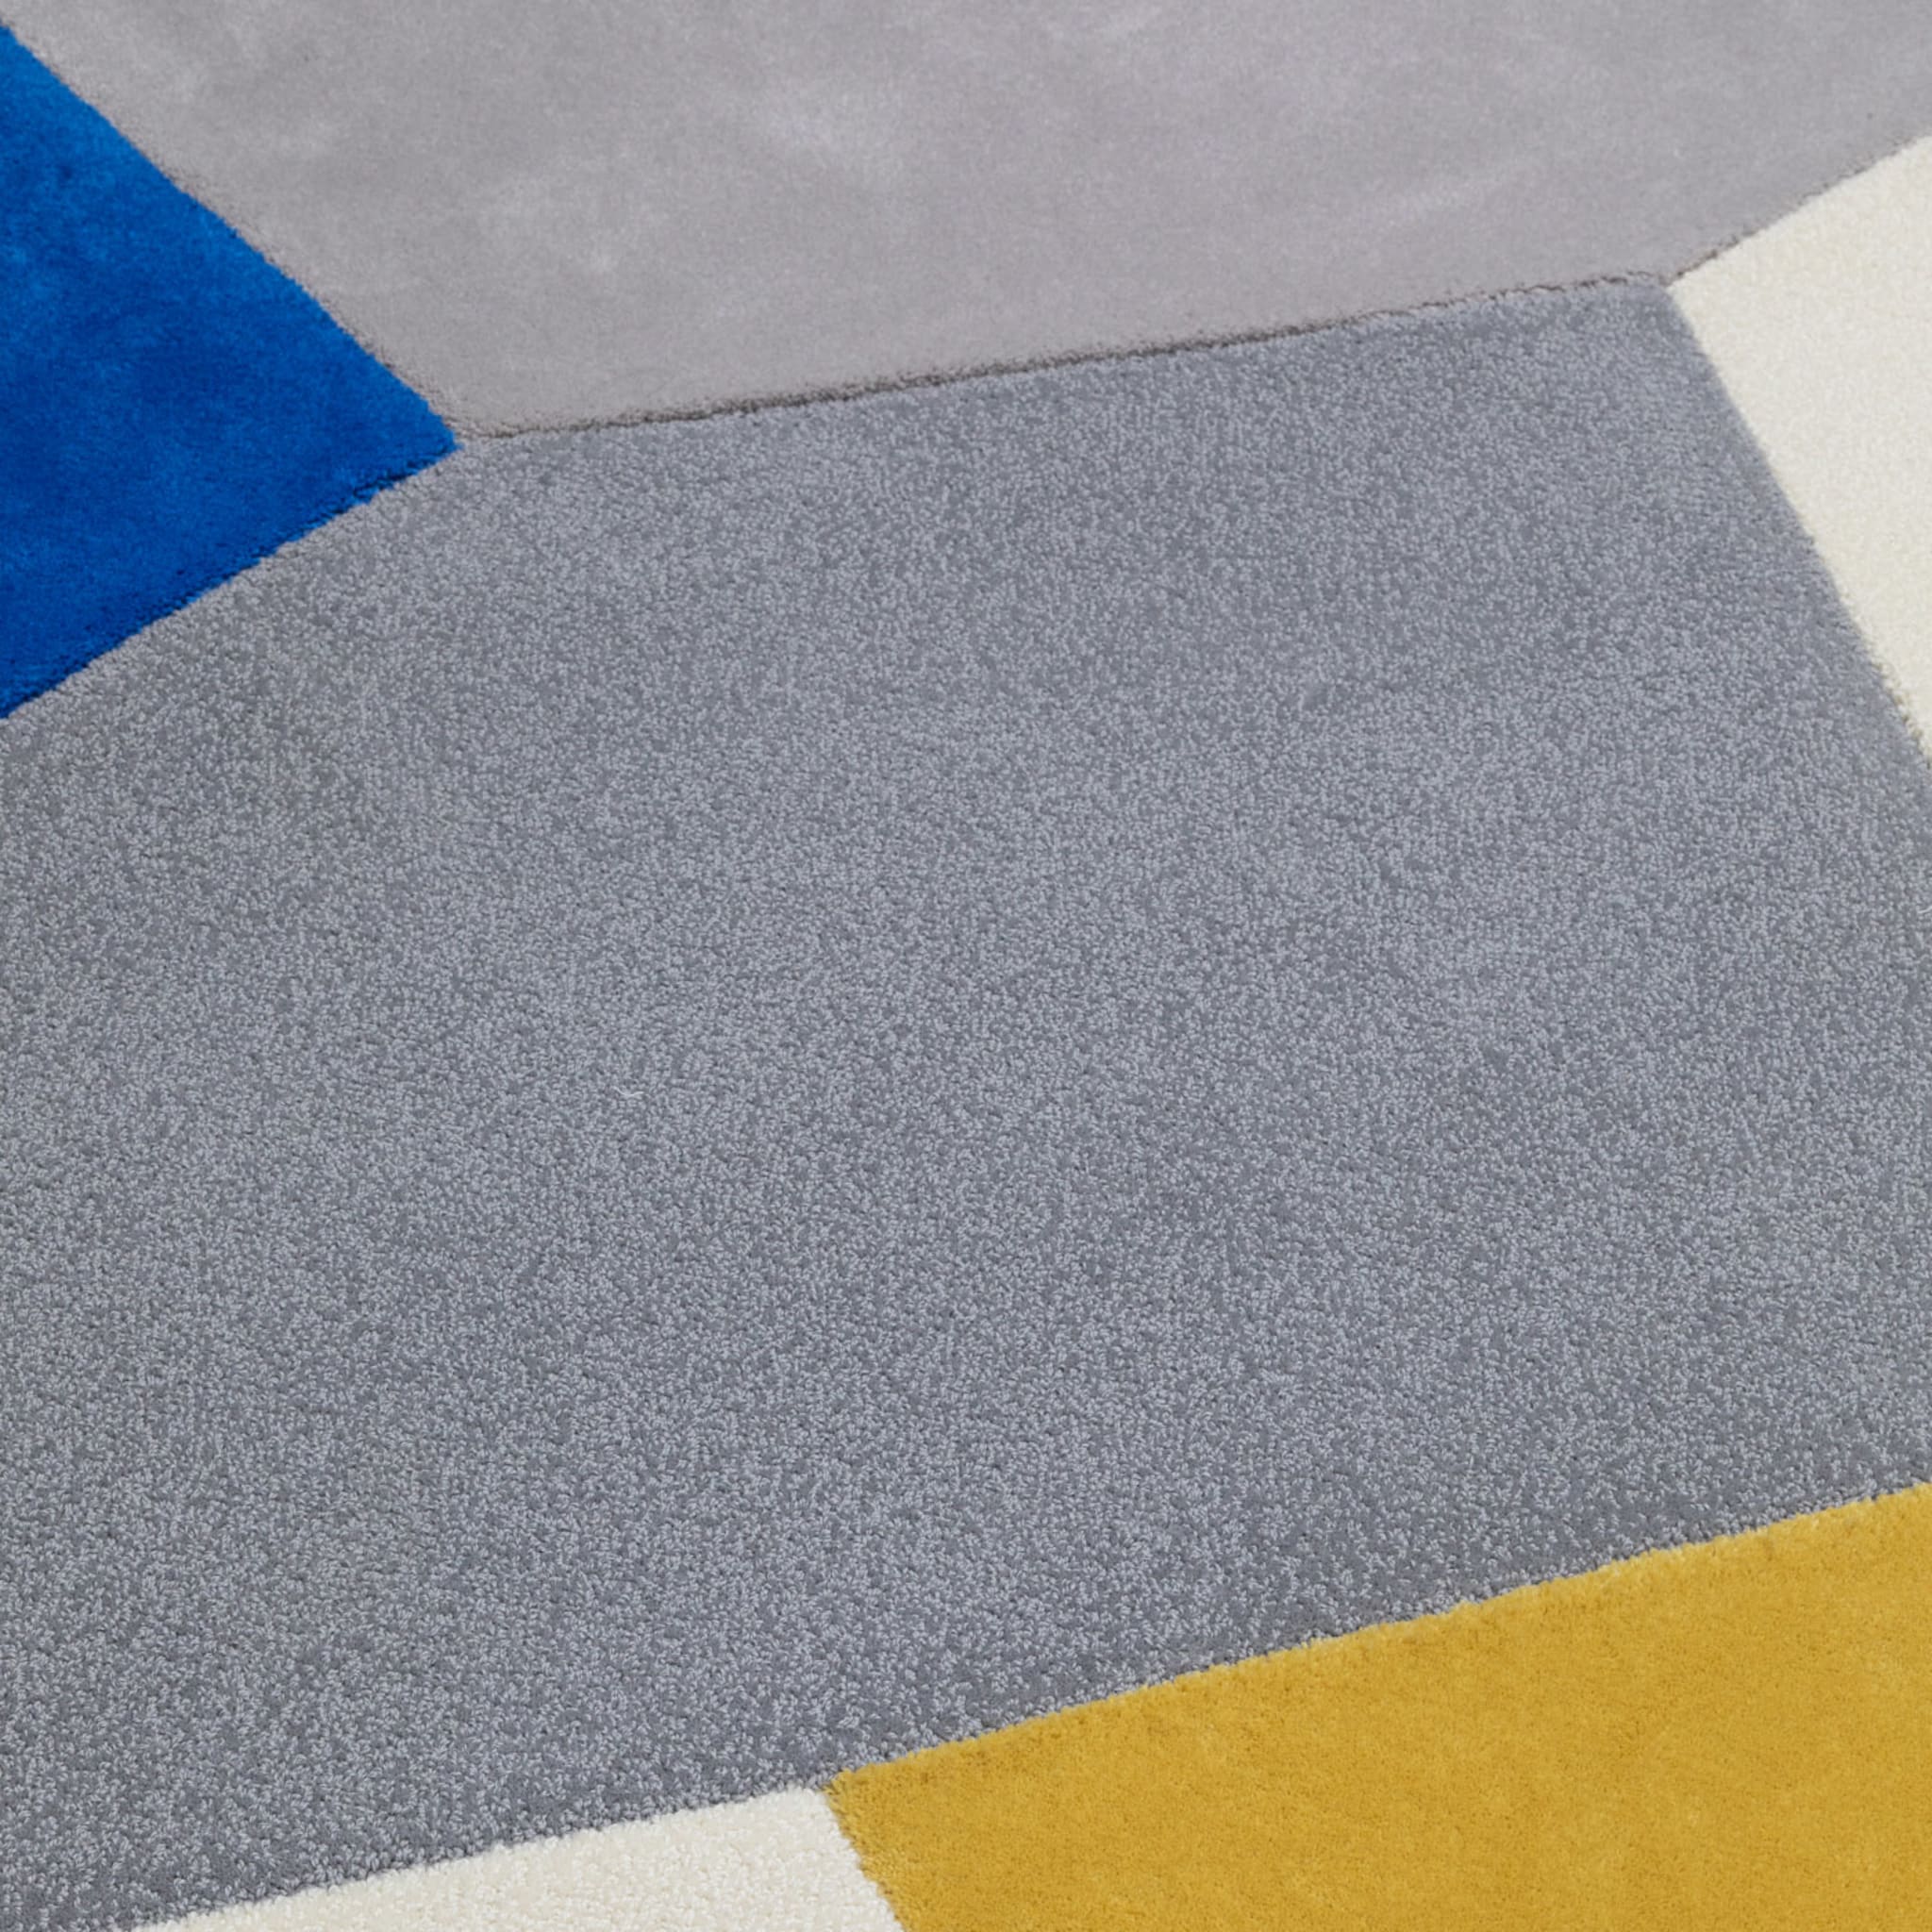 Sentiero di Alberto Modularer mehrfarbiger teppich von AMDL Circle - Alternative Ansicht 1